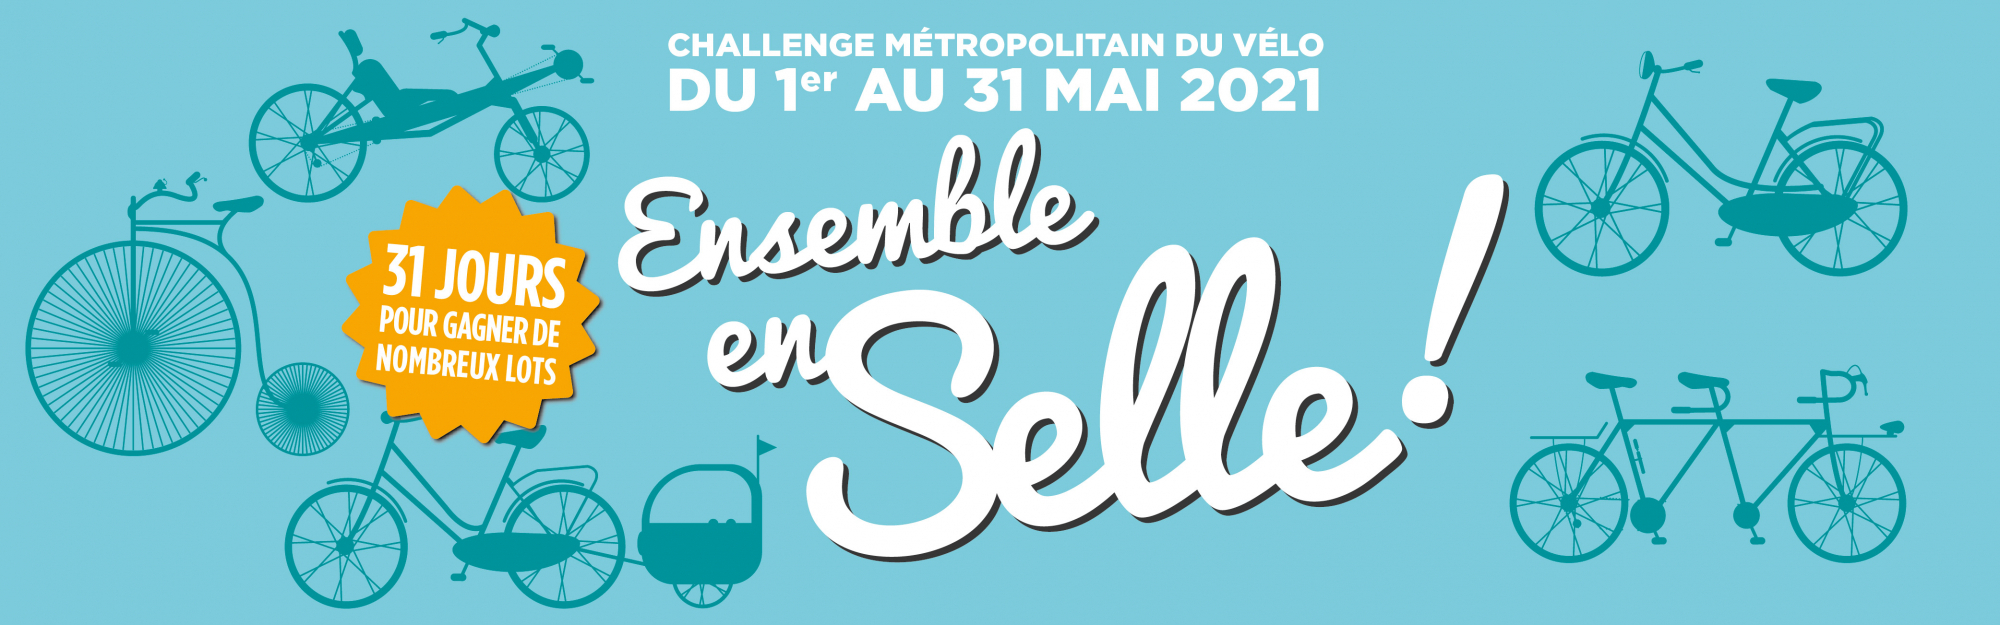 La Métropole Européenne de Lille lance la 4ème édition du Challenge Métropolitain du Vélo